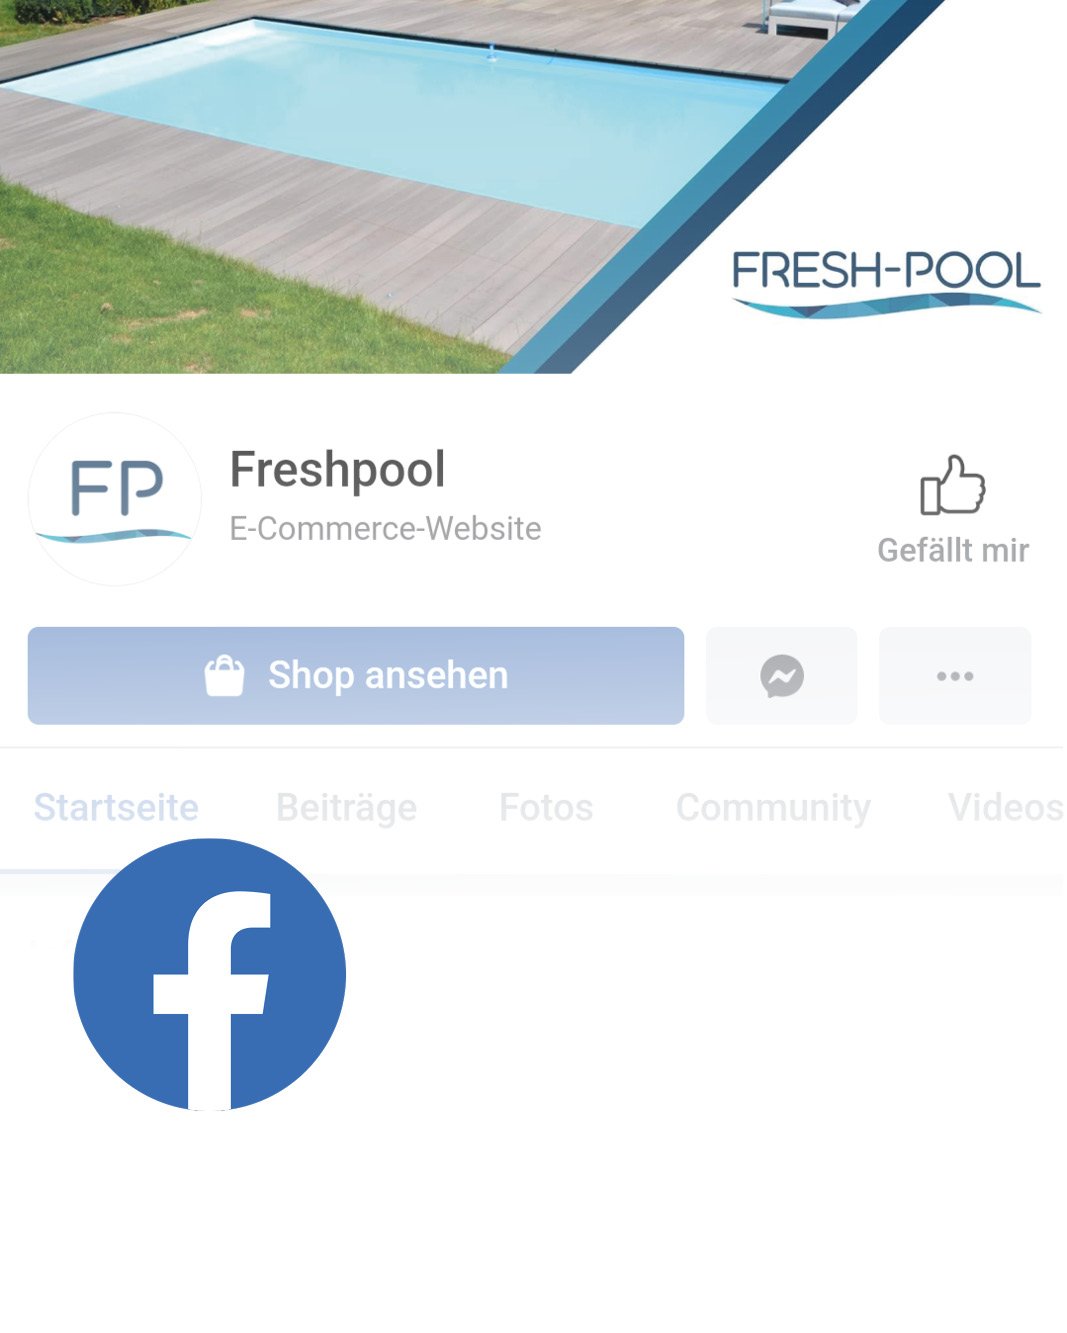 Link Fresh-Pool Facebook